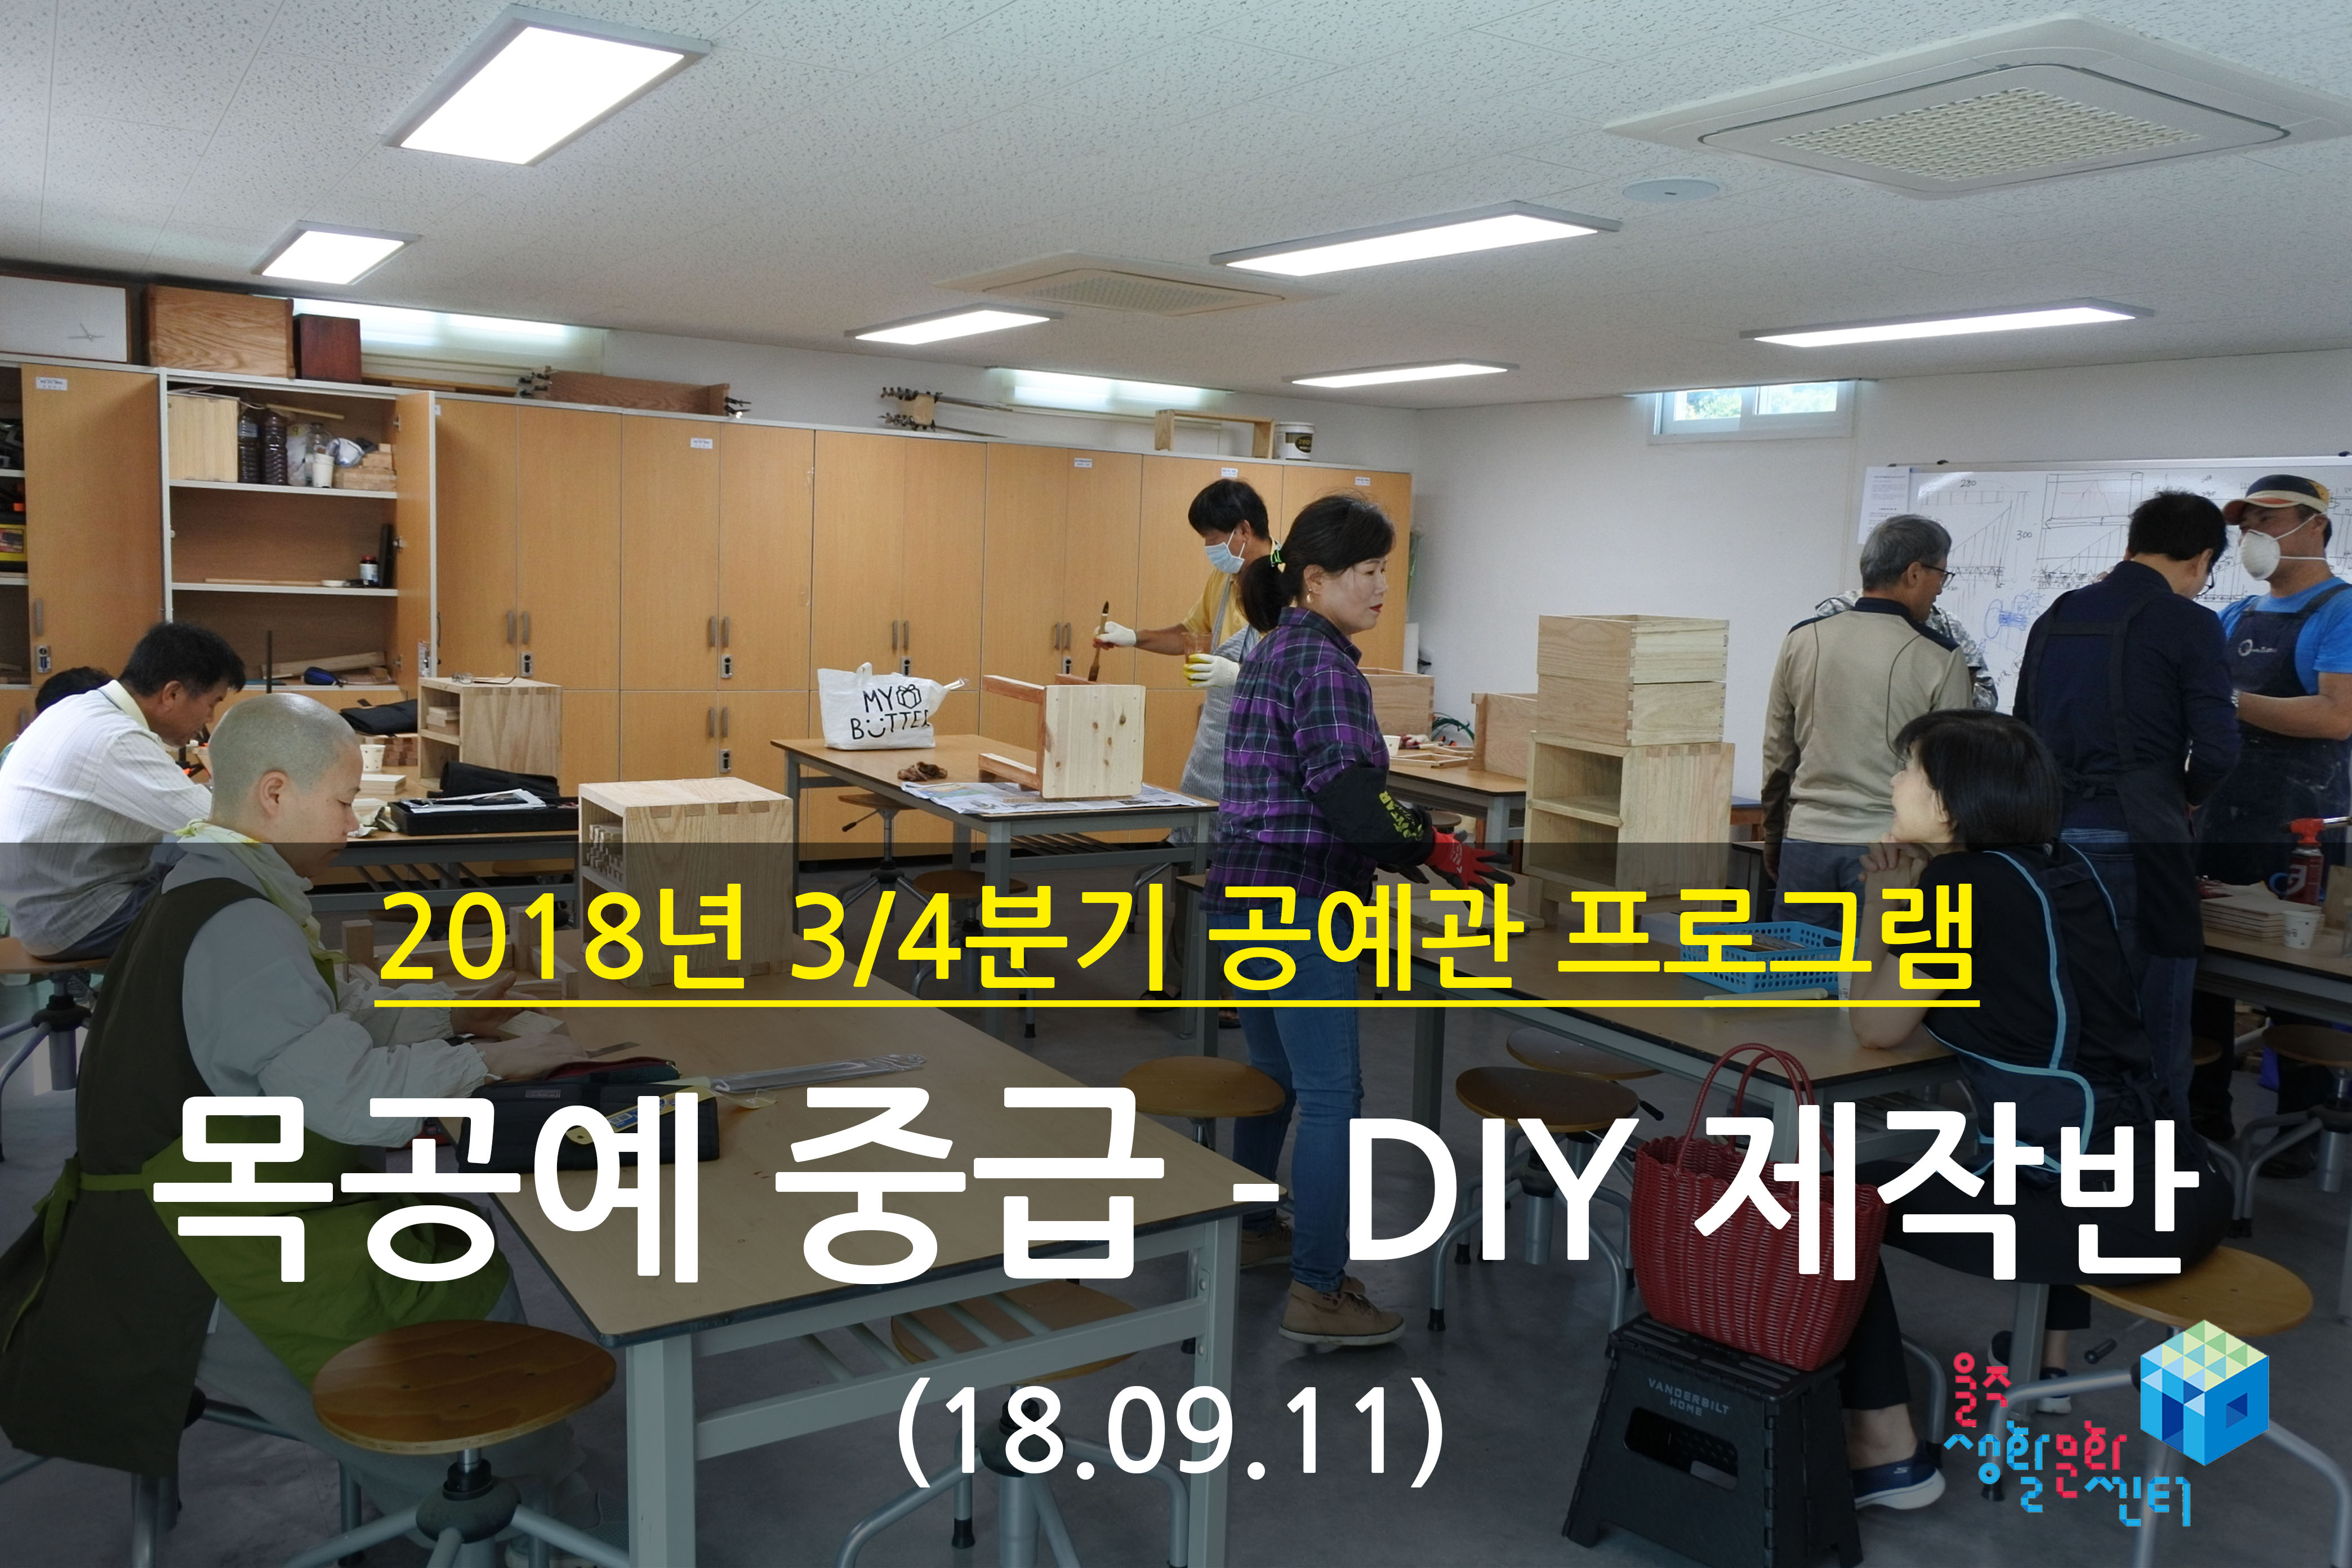 2018.09.11 _ 목공예 중급 - DIY 제작반 _ 3/4분기 11주차 수업